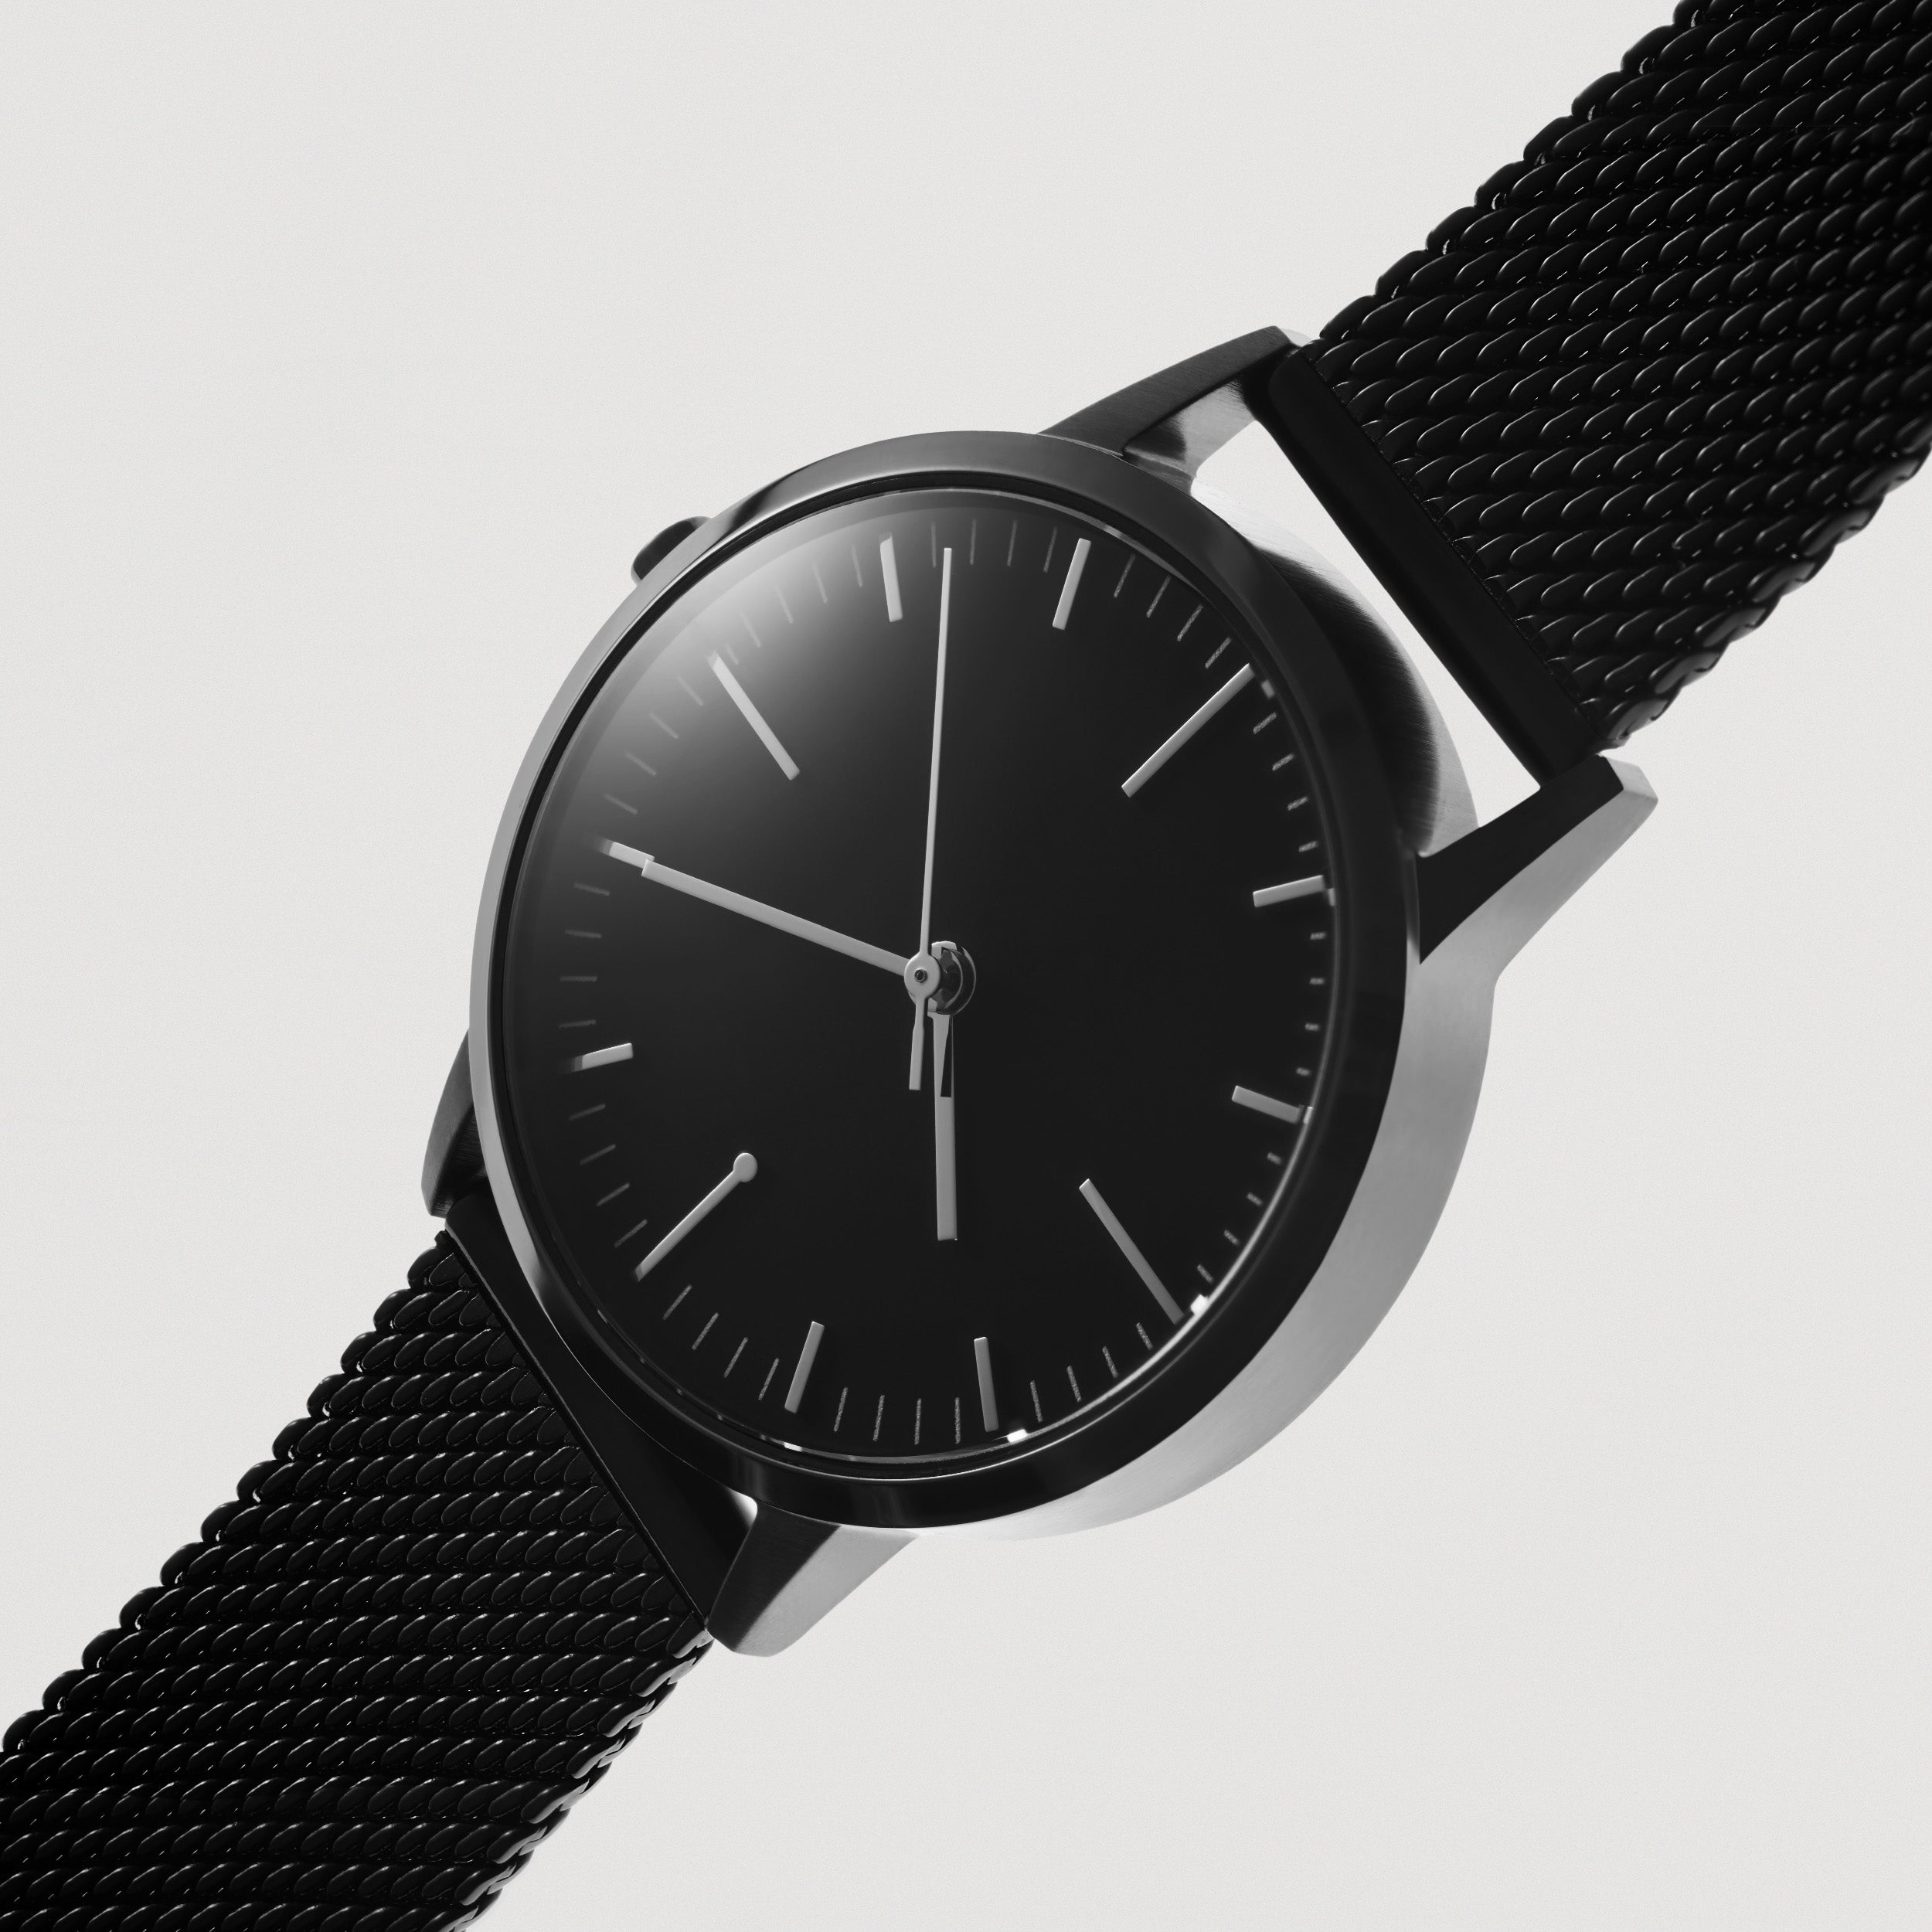 Ladies Watch Mesh Strap - All Black Watch - Simple Design - Black Mesh - UK - Under £100 - Freedom To Exist - Minimal Watches British Design